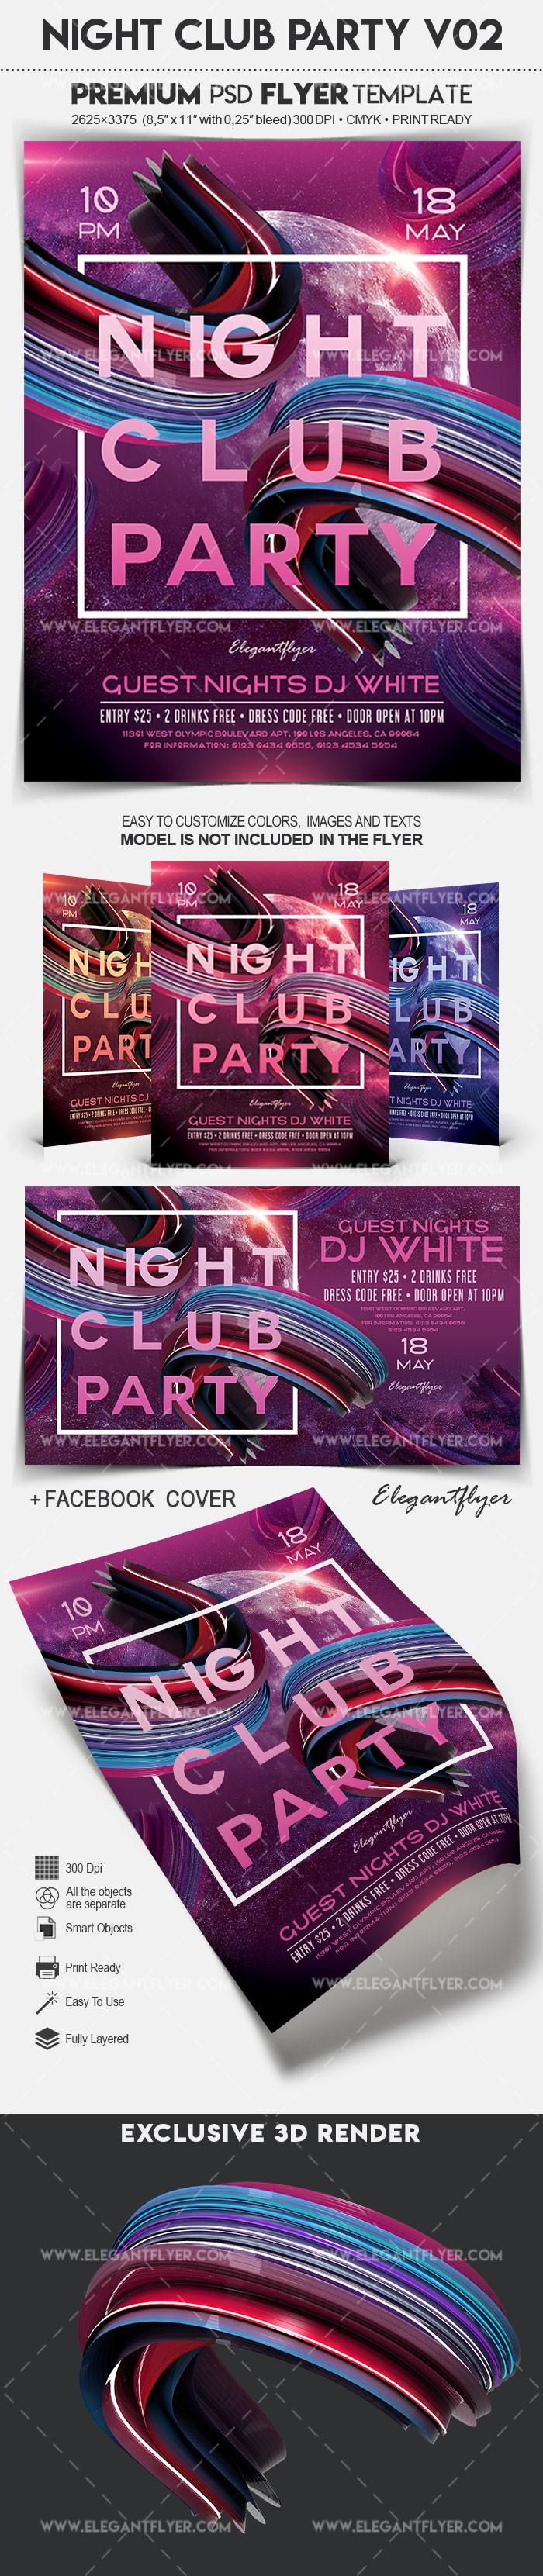 Night Club Party V02 by ElegantFlyer